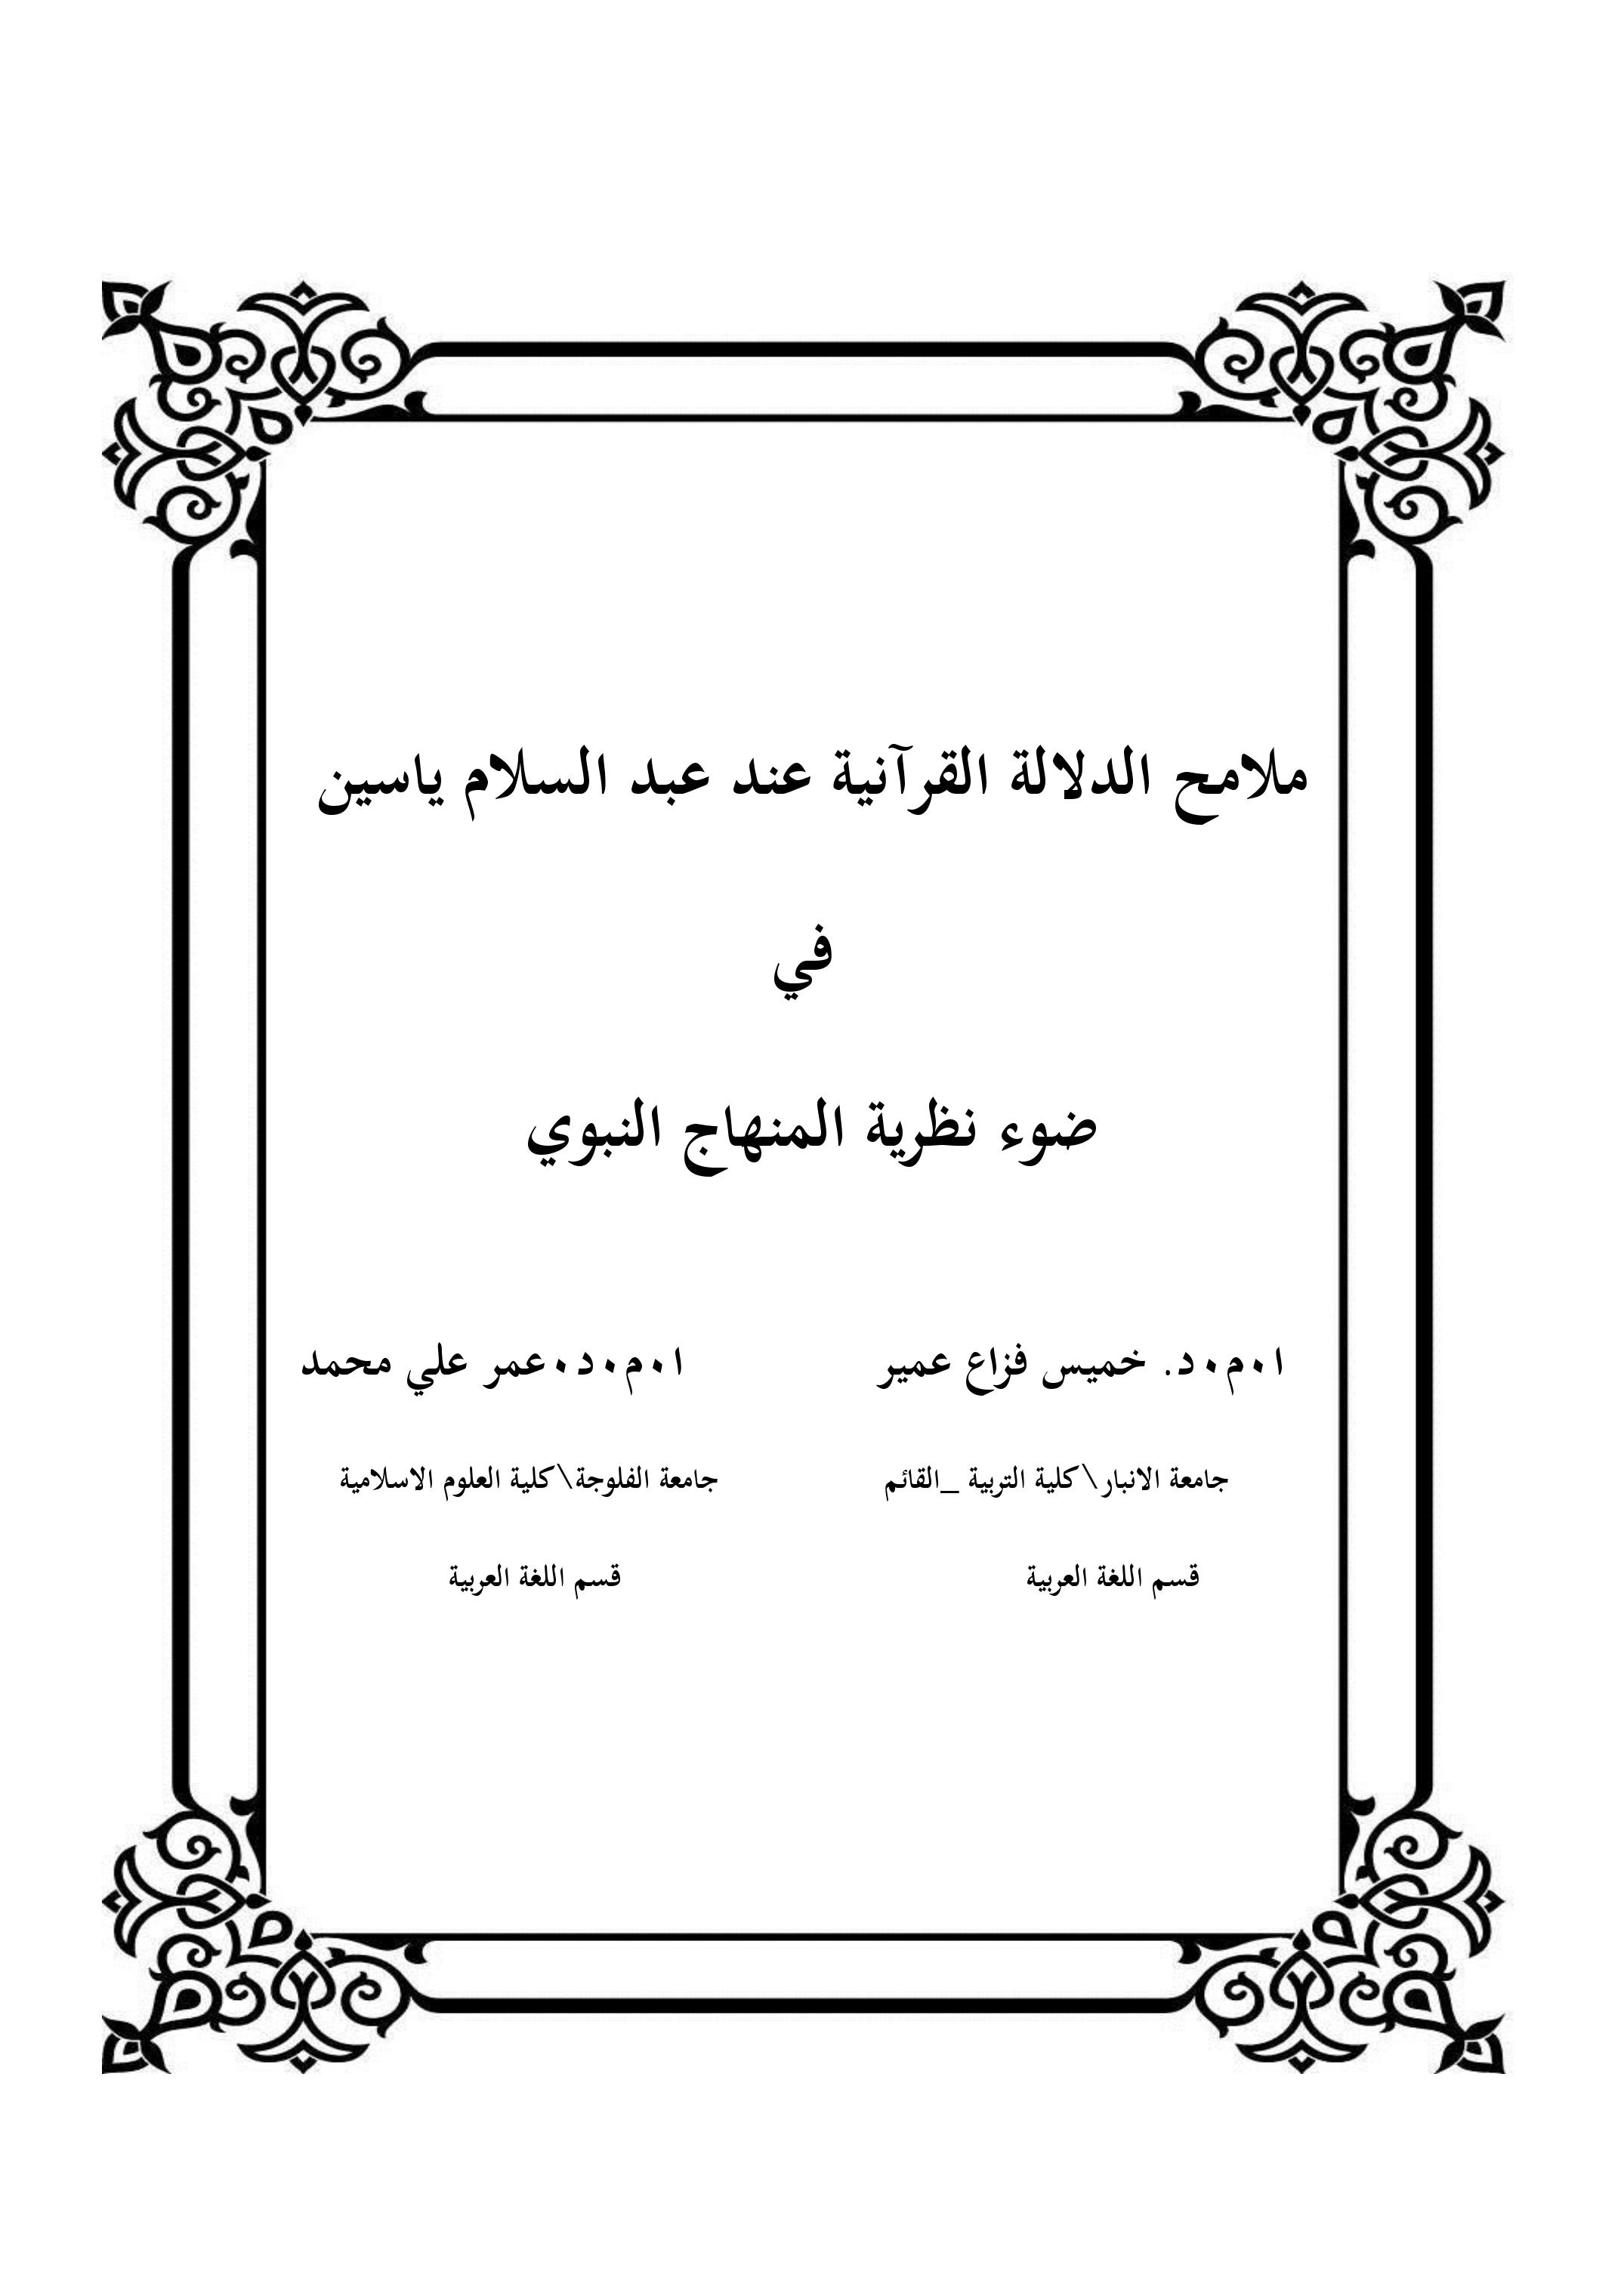 ملامح الدلالة القرآنية عند عبد السلام ياسين  في ضوء نظرية المنهاج النبوي